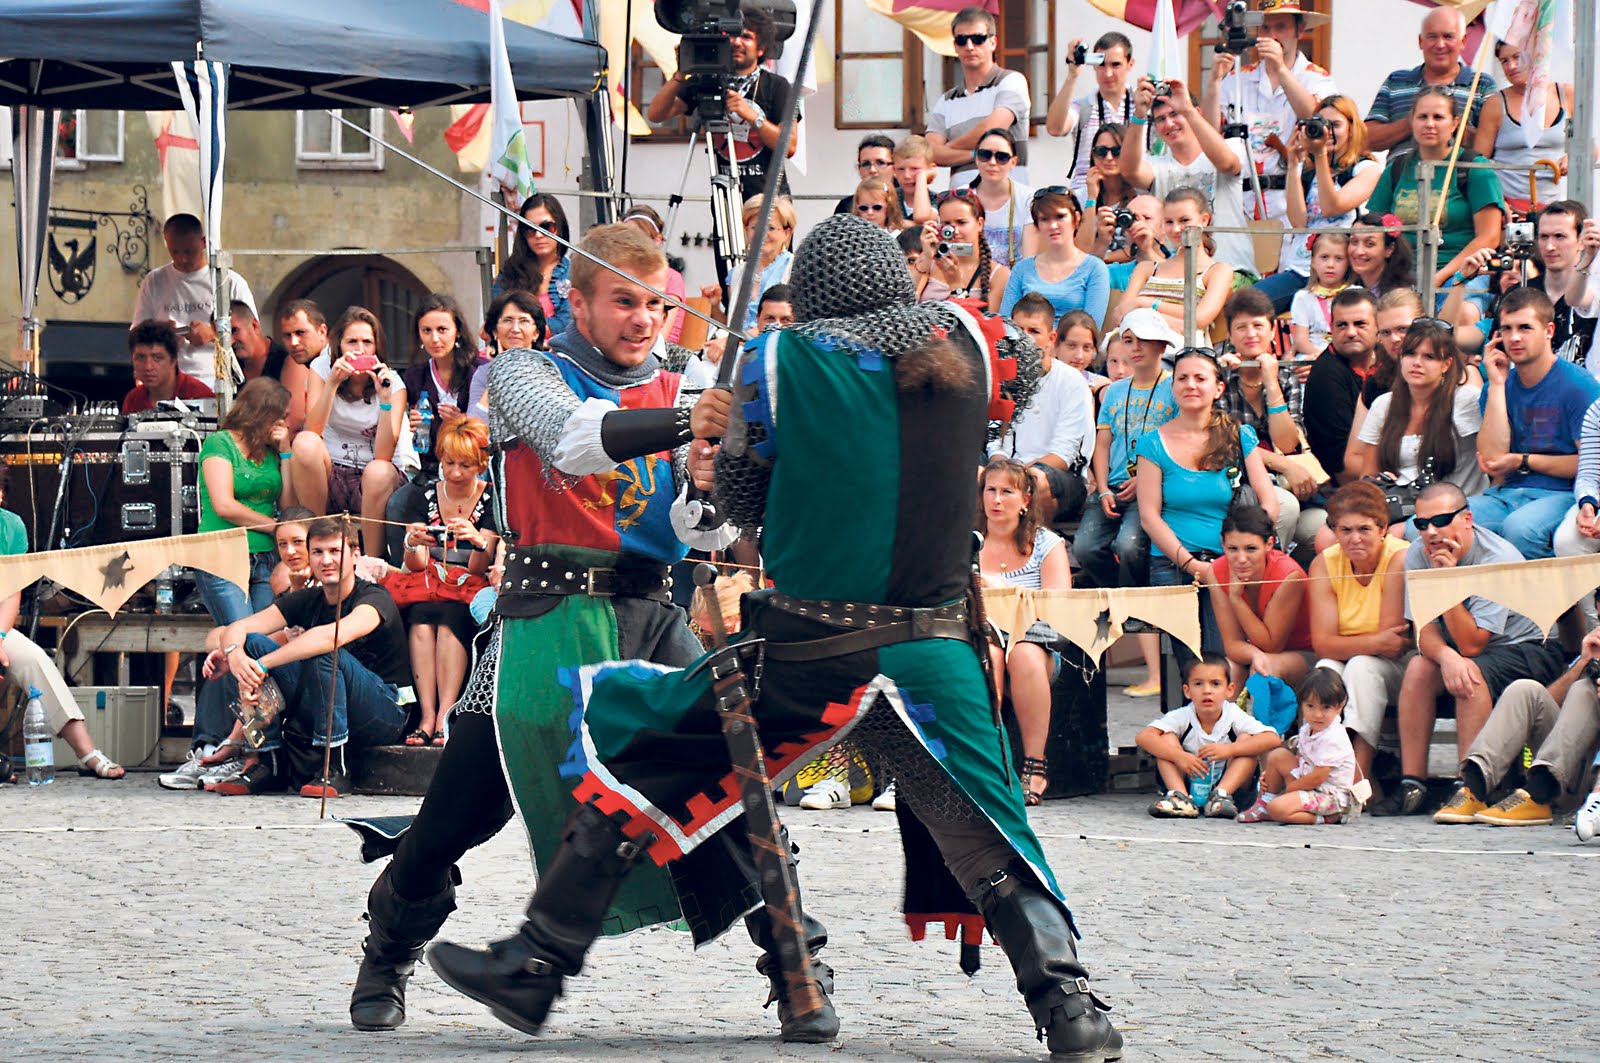 Schässburg Festival belebt mittelalterliche Traditionen